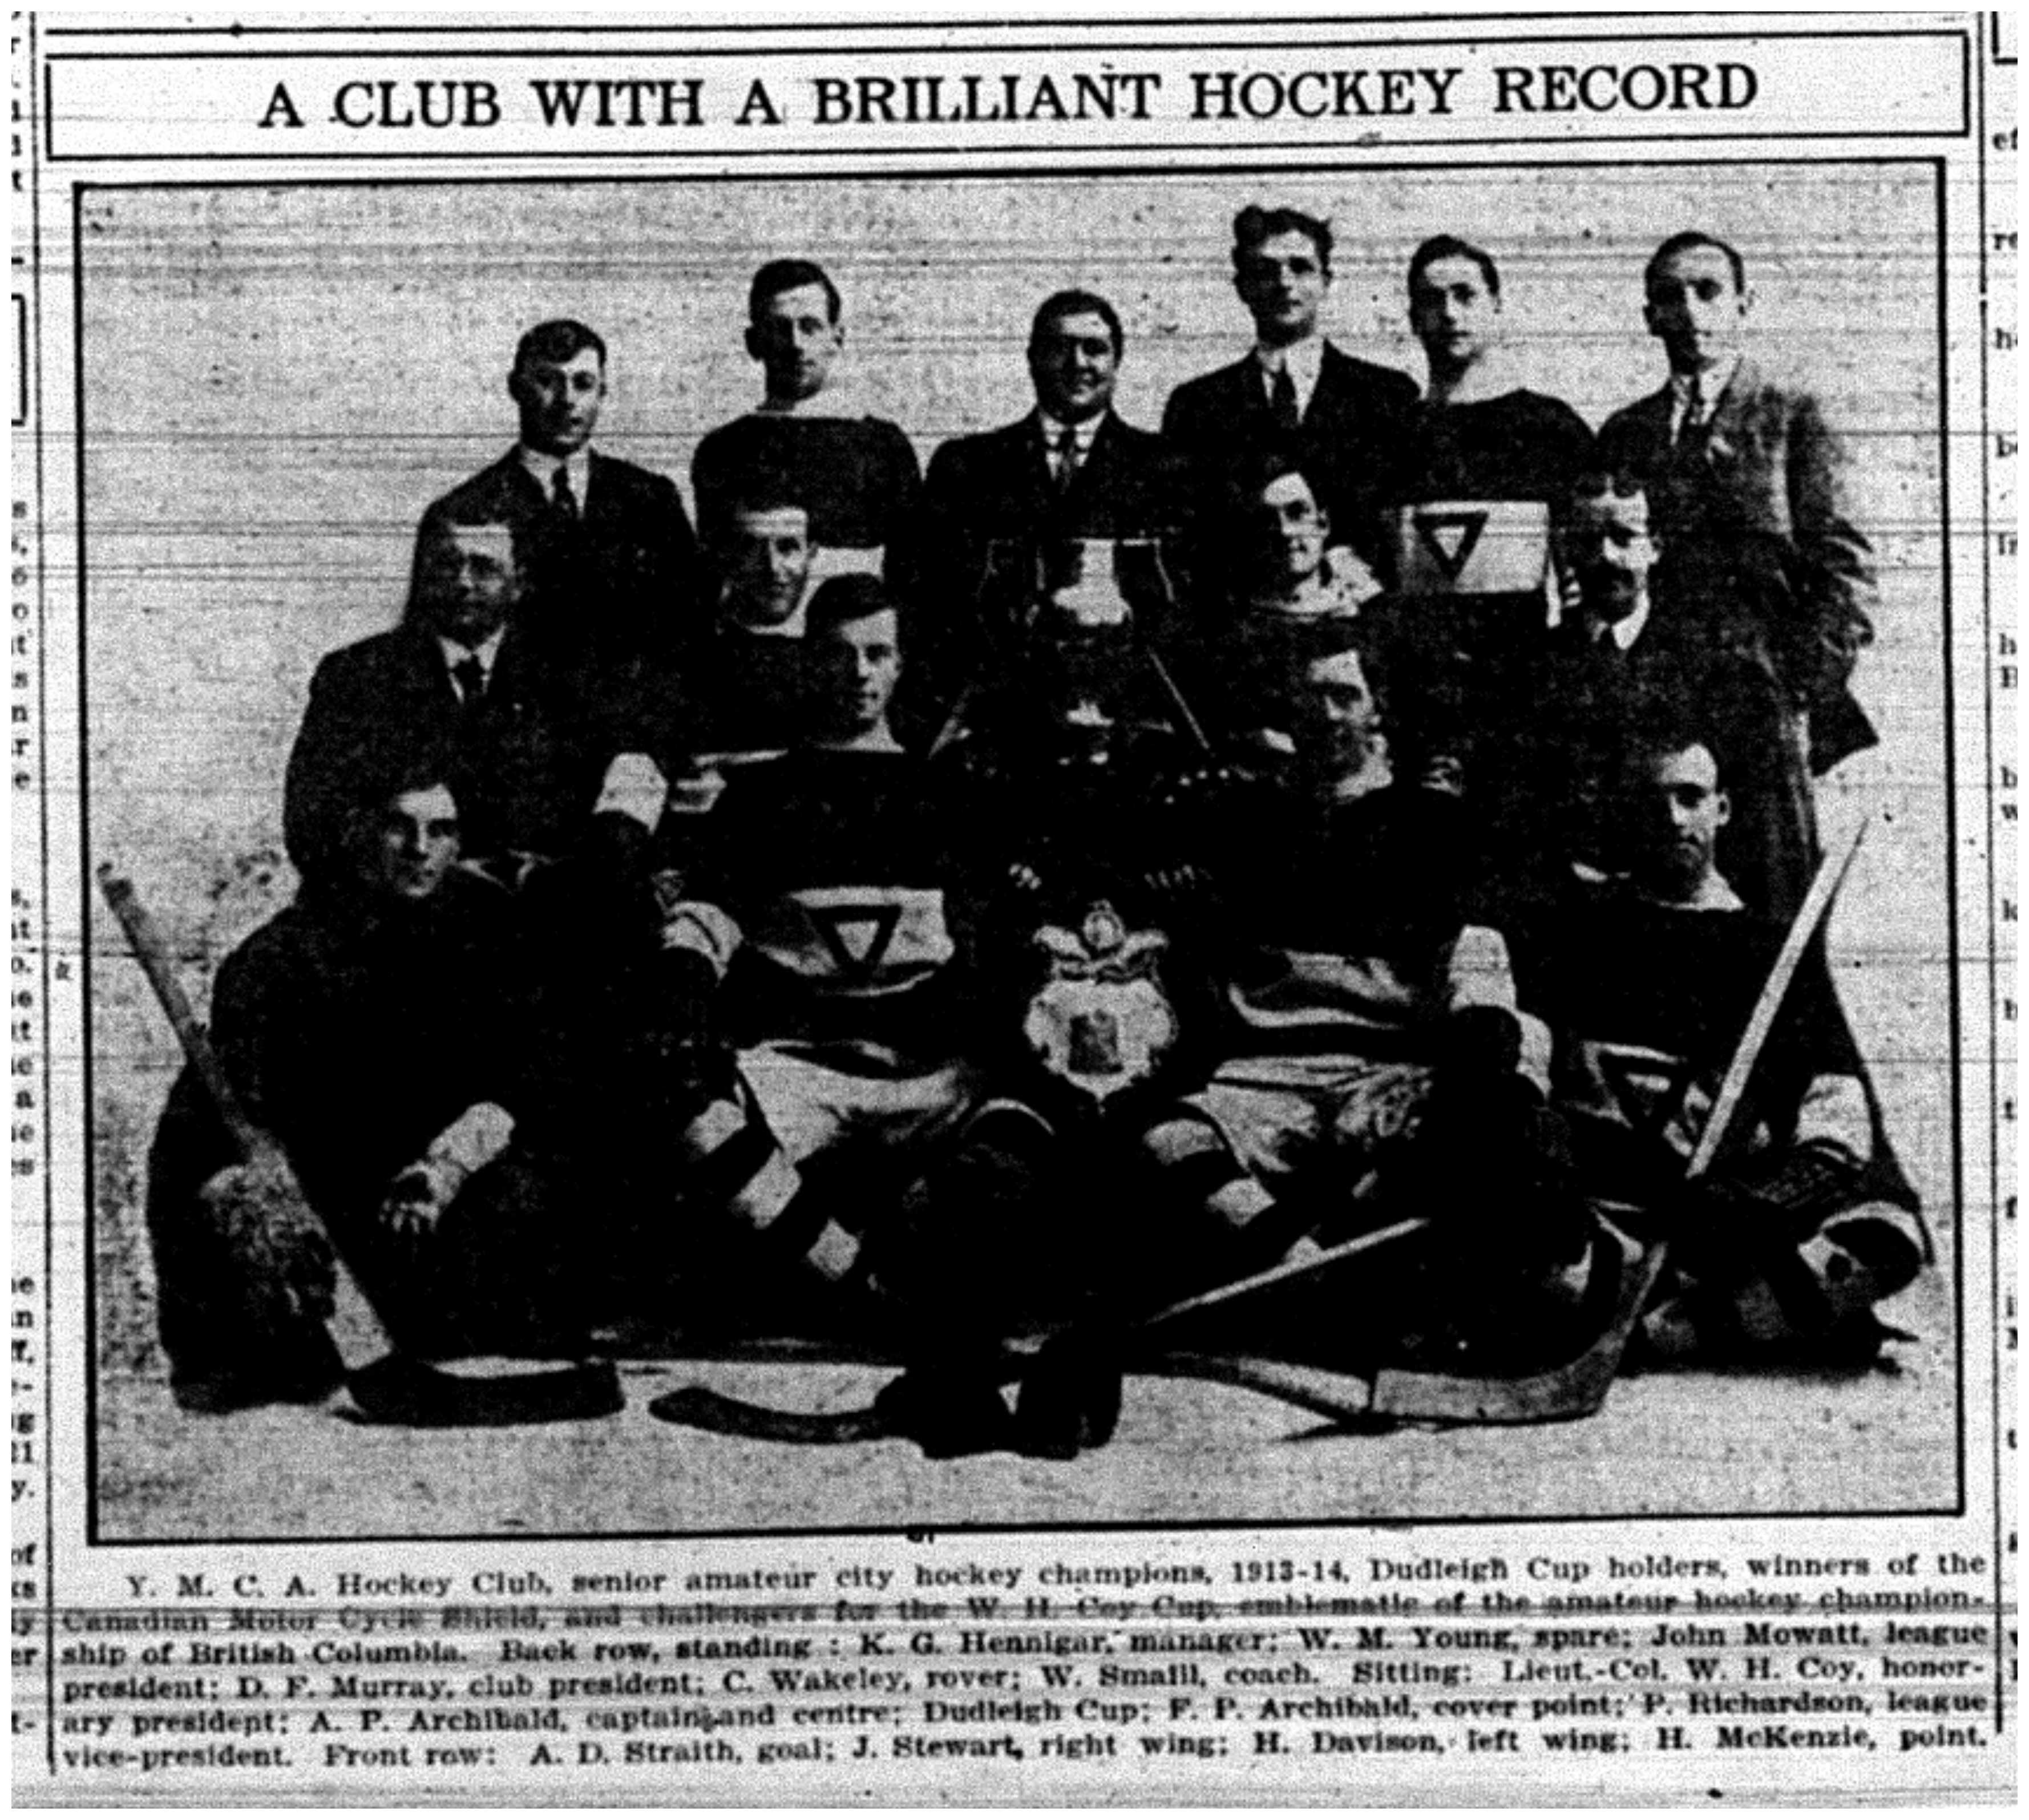 "A Club With a Brilliant Hockey Record"